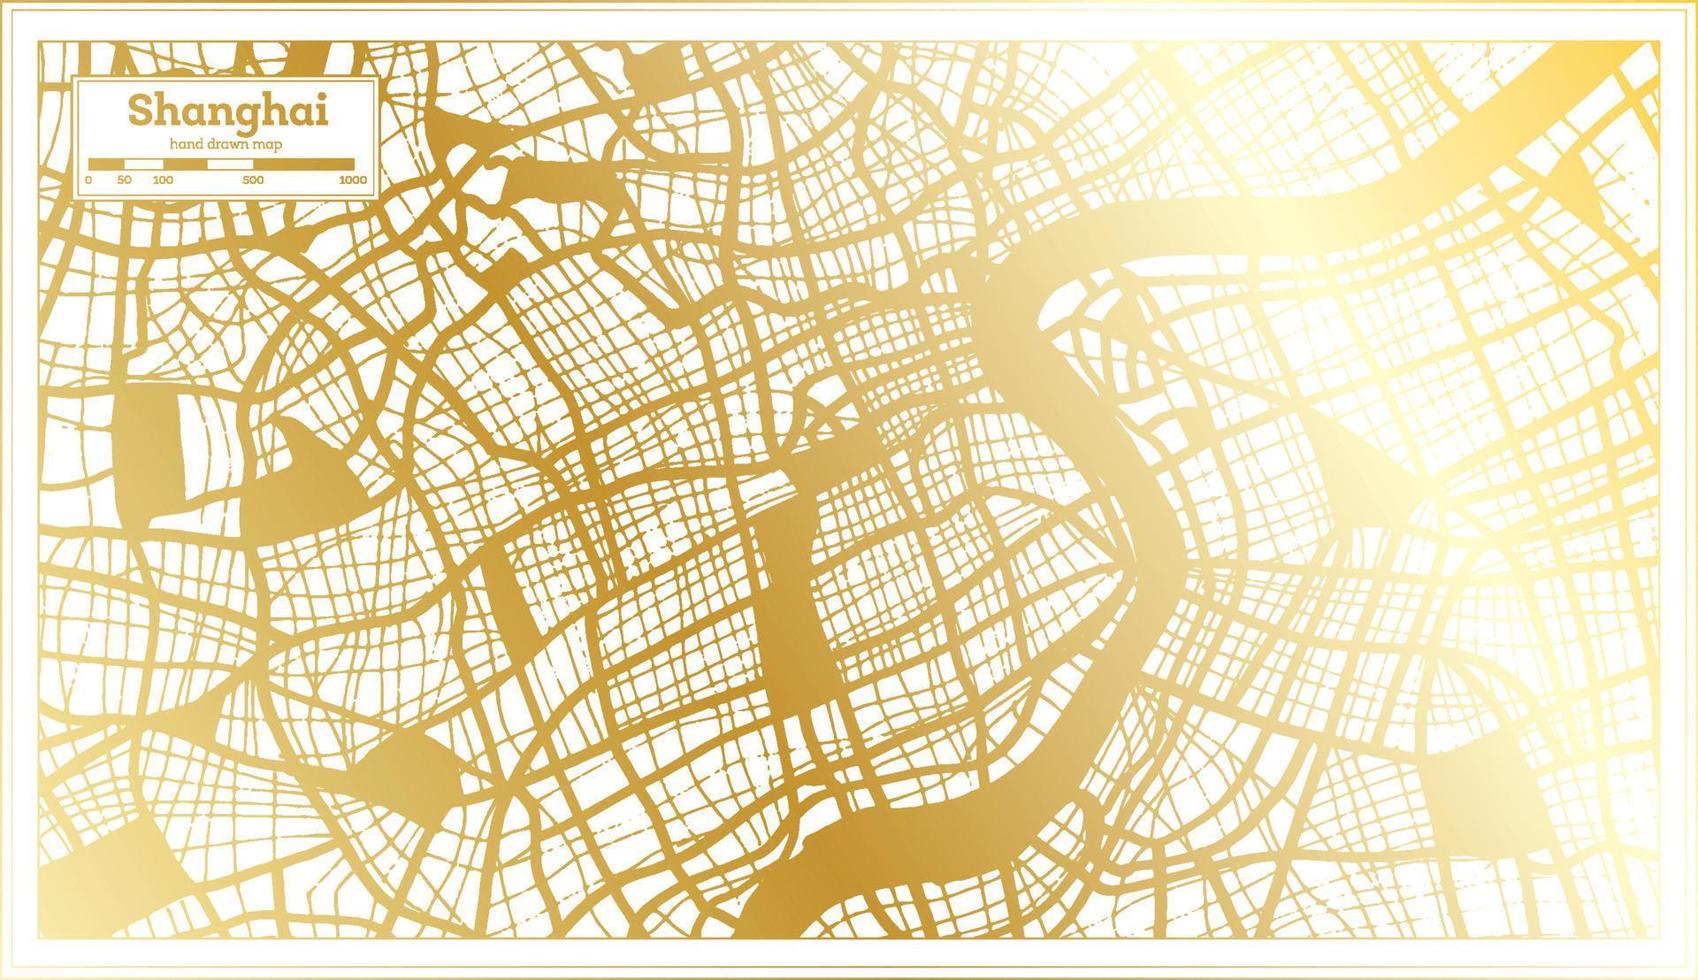 plan de la ville de shanghai en chine dans un style rétro de couleur dorée. carte muette. vecteur